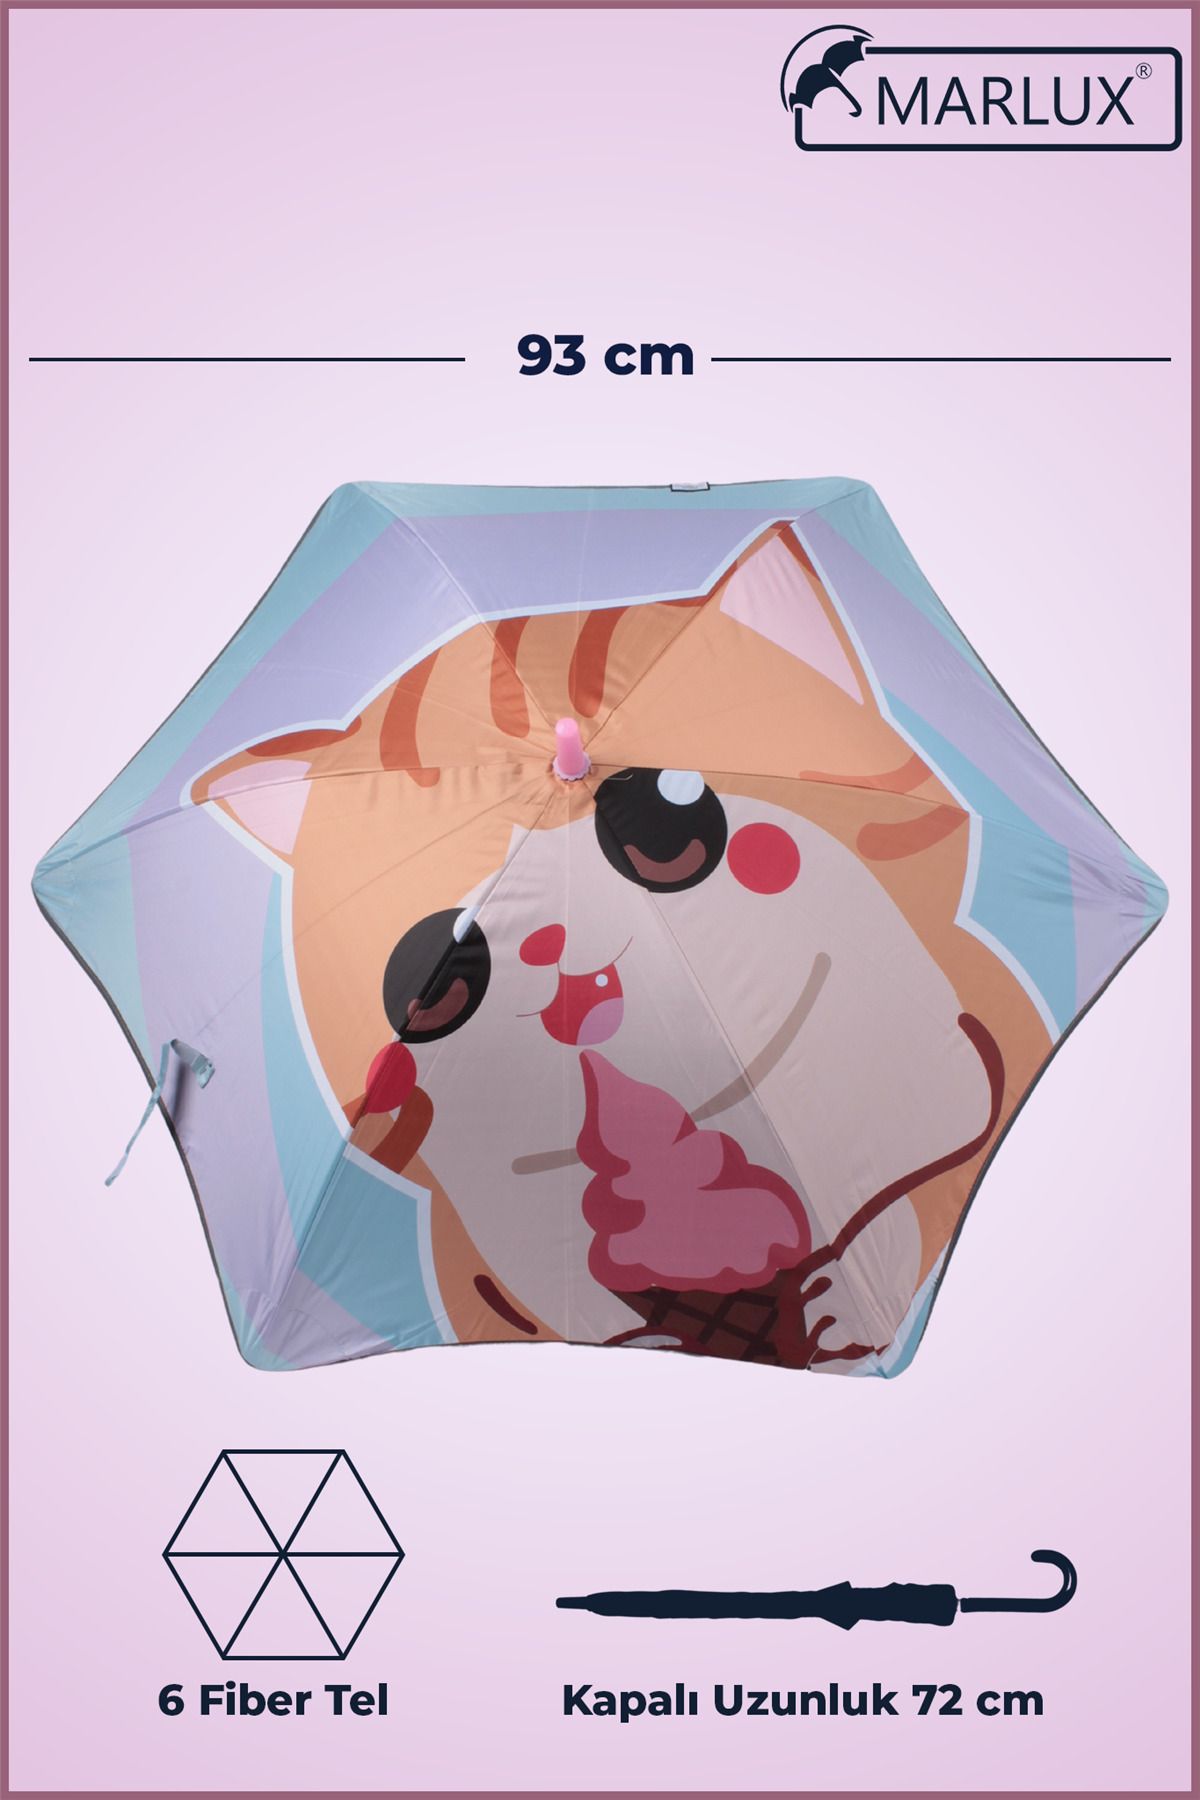 Marlux Fiber 6 Telli Dayanıklı Özel Tasarım Çocuk Şemsiyesi Dondurma Yiyen Kedi Desenli Mar1099